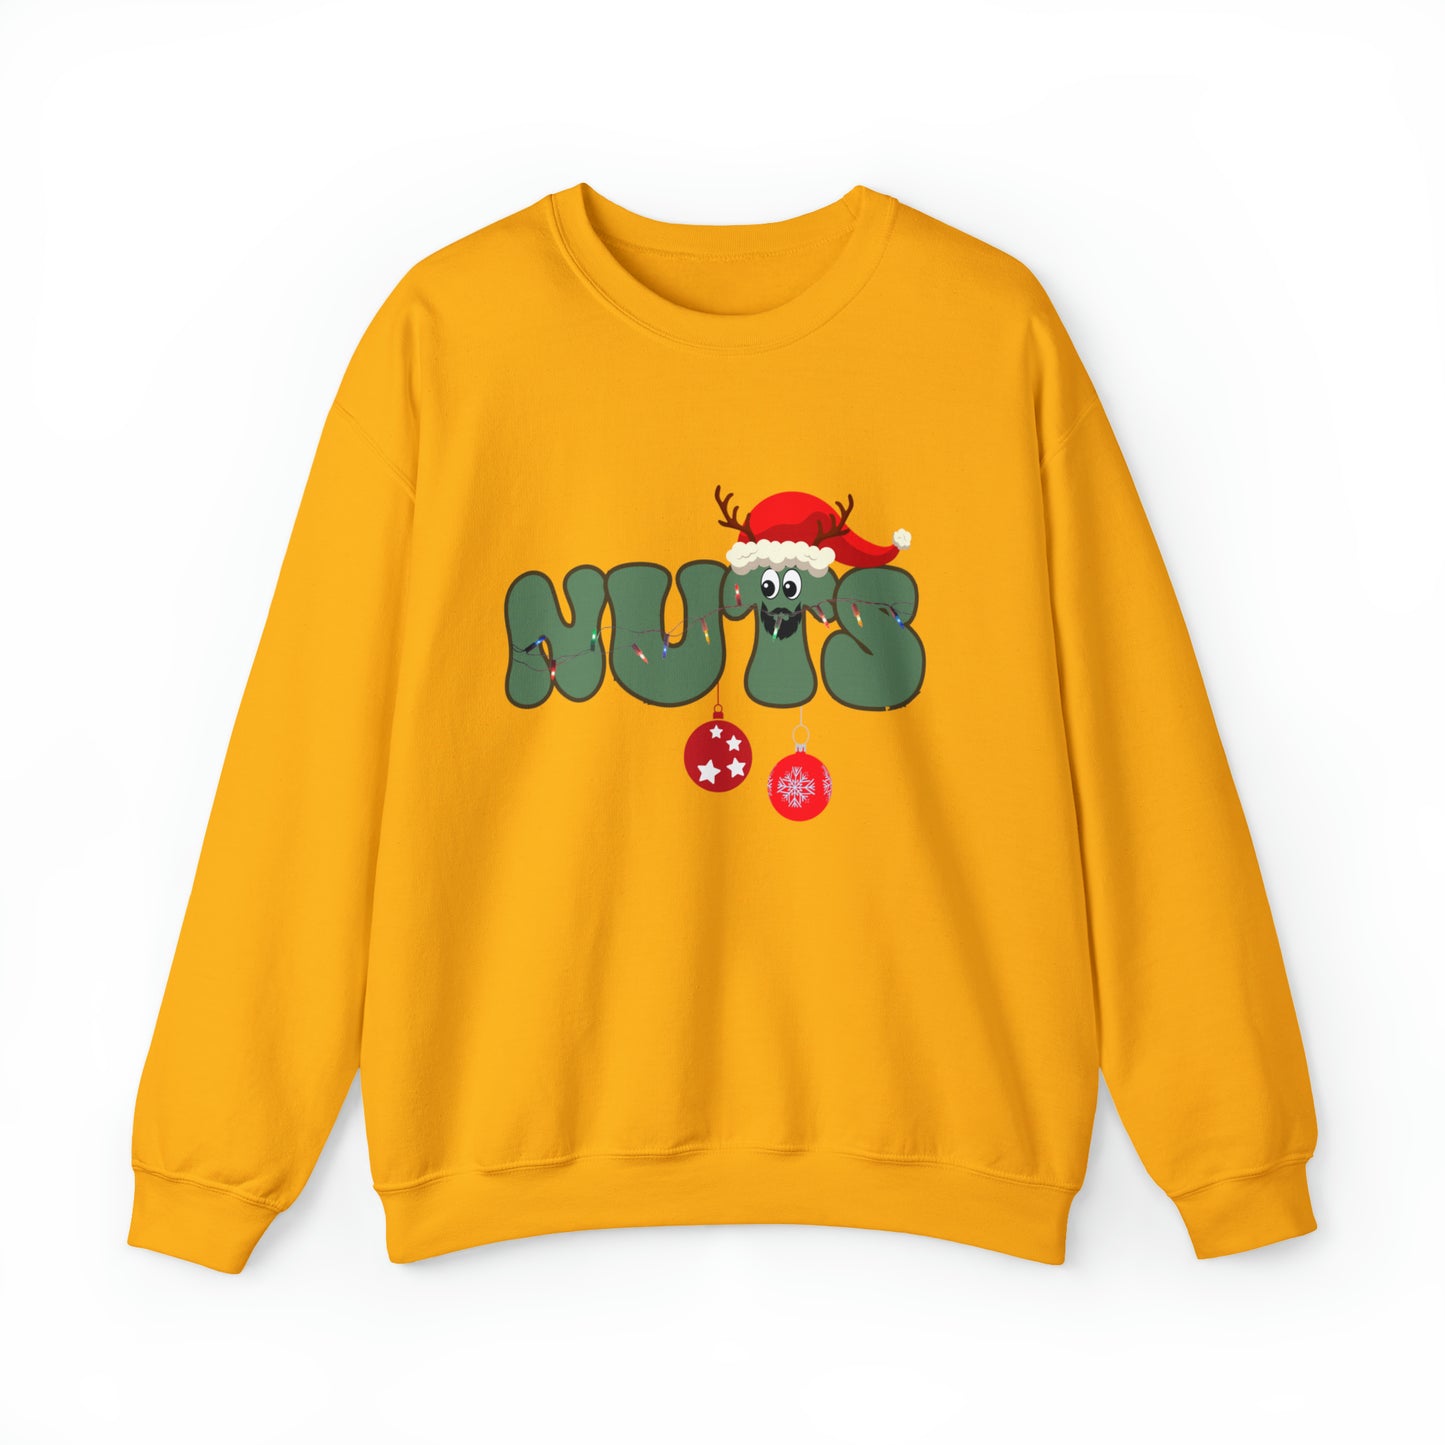 Couple Chest Nuts Crewneck Sweatshirt, Christmas Holiday Sweatshirt, Christmas Gift for Couples, Funny Matching Christmas Sweatshirt, SW949